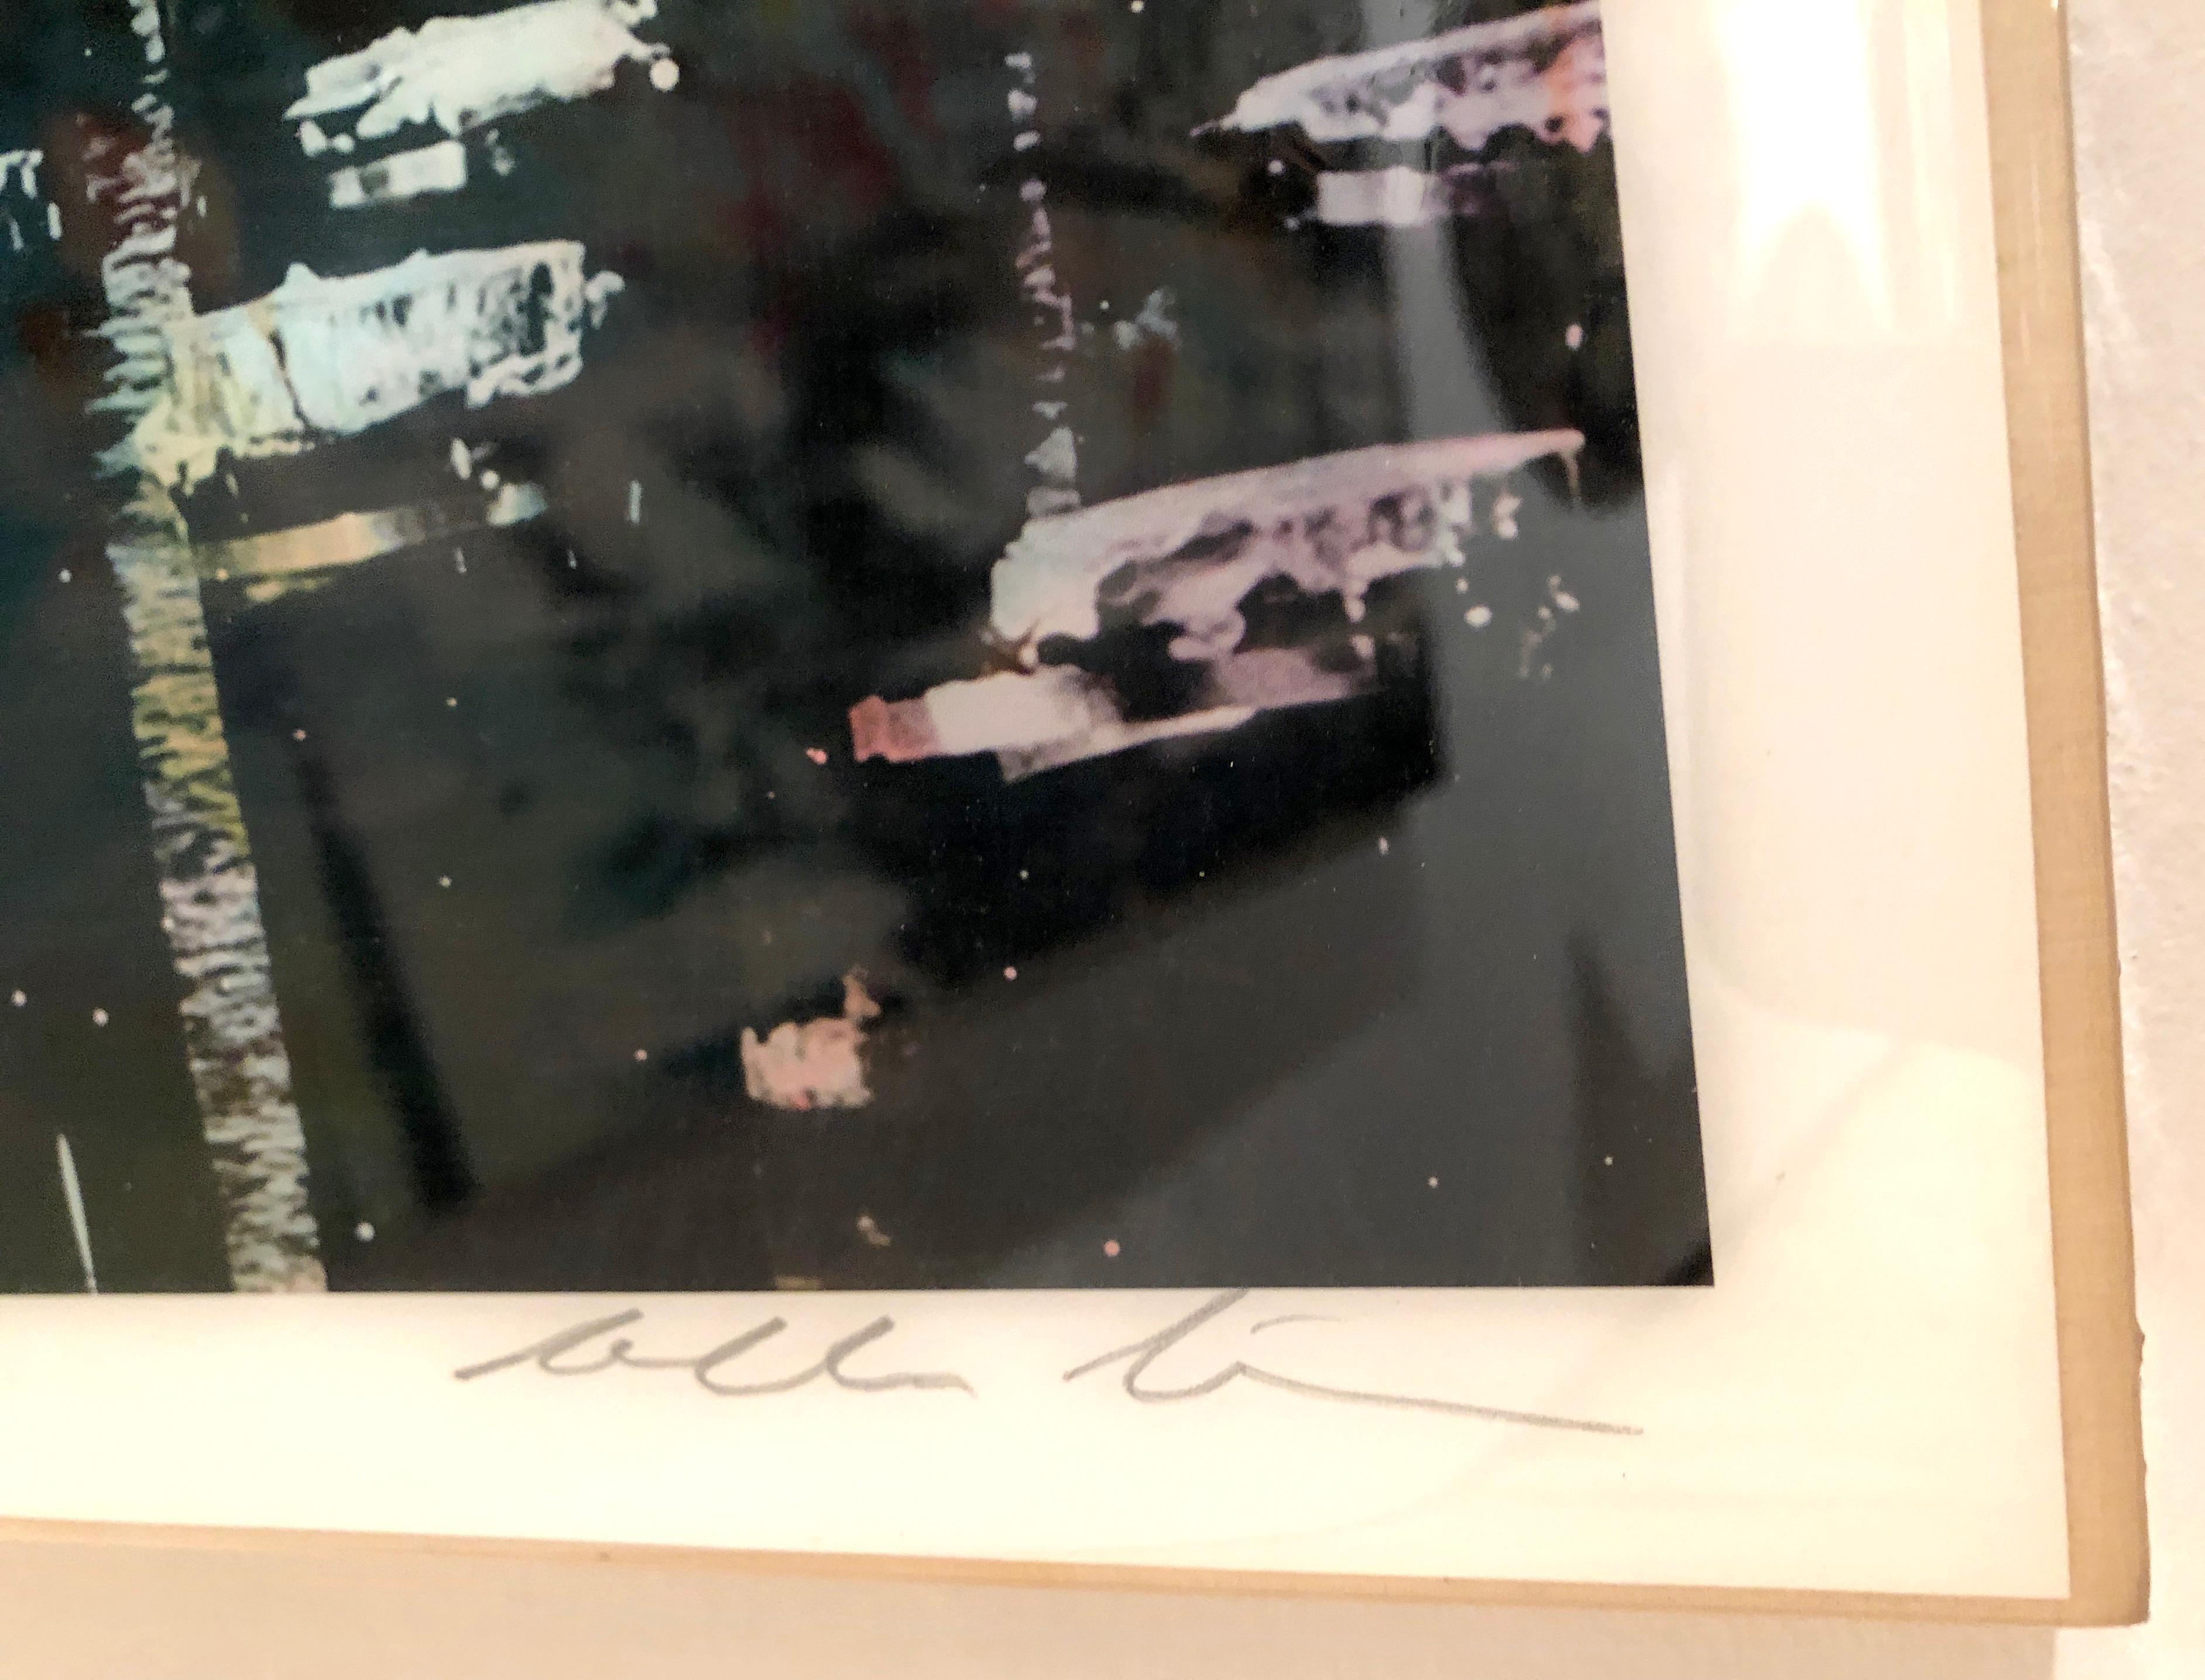 Alberto Sanchez
Junto al Muelle (60cm x 60cm), 2018
Impression pigmentaire d'archive sur papier d'art, montée
sur panneau de bouleau, recouvert de résine
60h x 60w x 7d cm
23.62h x 23.62w x 2.76d in
Edition de 20

L'Australien et Espagnol Alberto